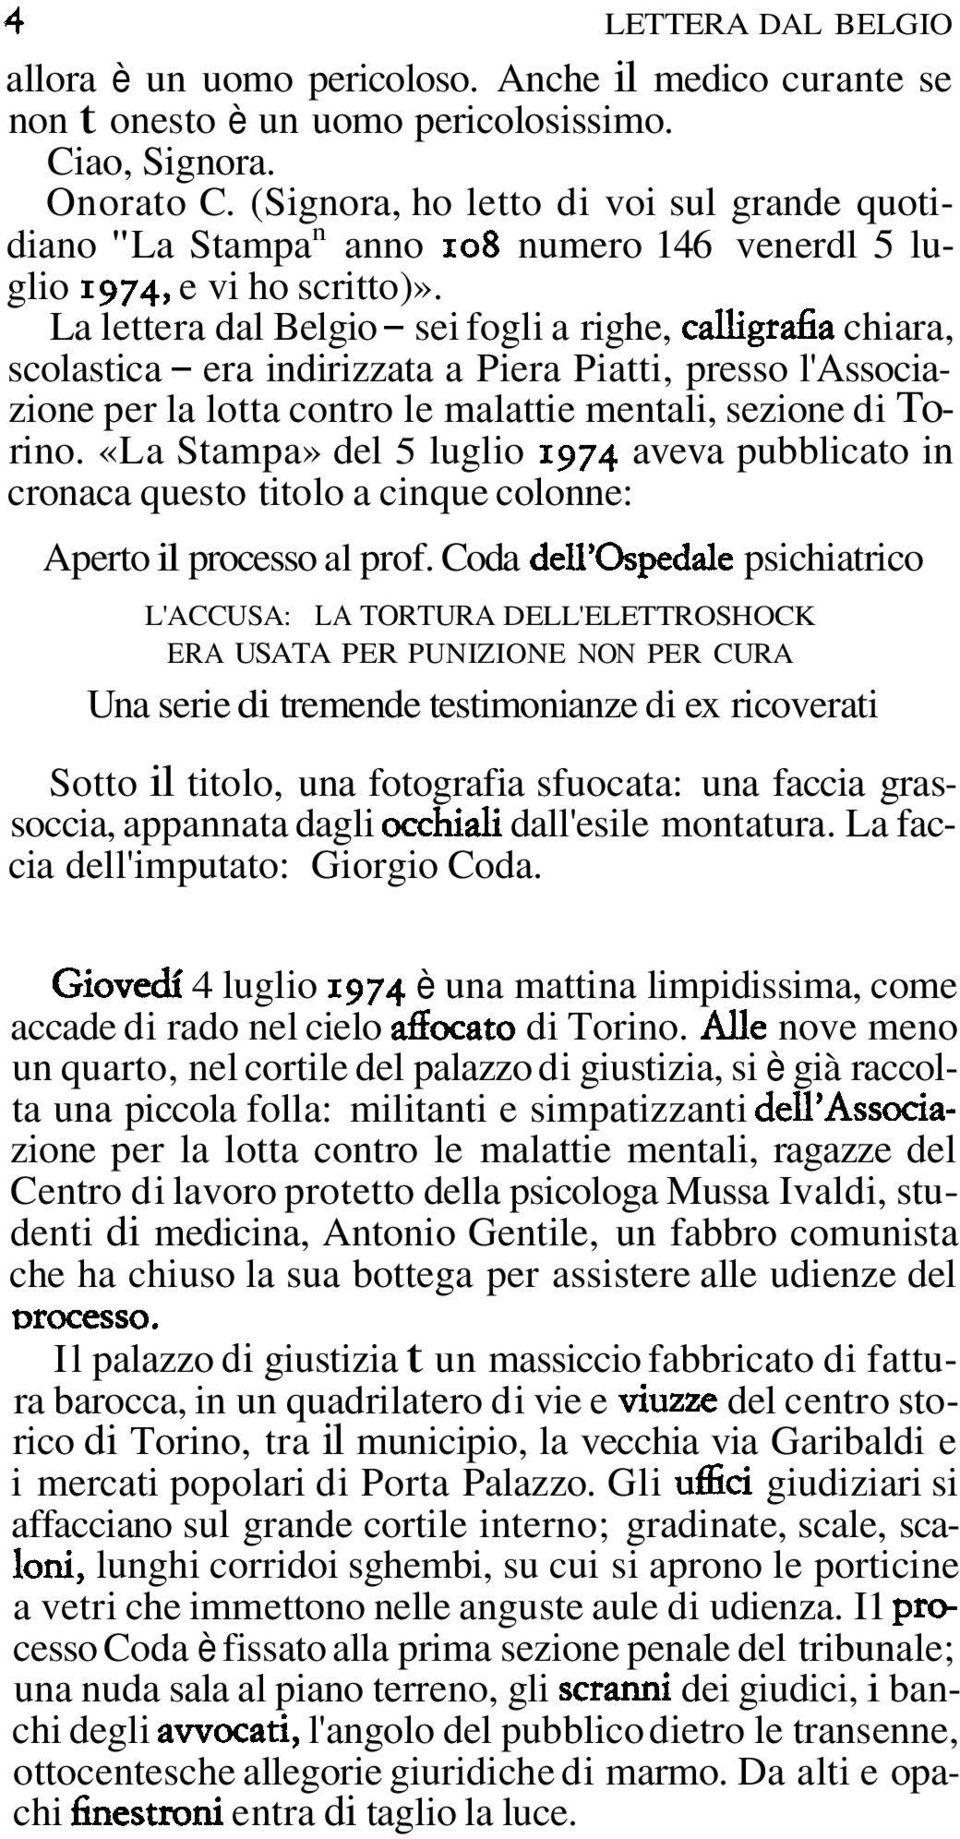 La lettera dal Belgio - sei fogli a righe, calligra6a chiara, scolastica - era indirizzata a Piera Piatti, presso l'associazione per la lotta contro le malattie mentali, sezione di Torino.